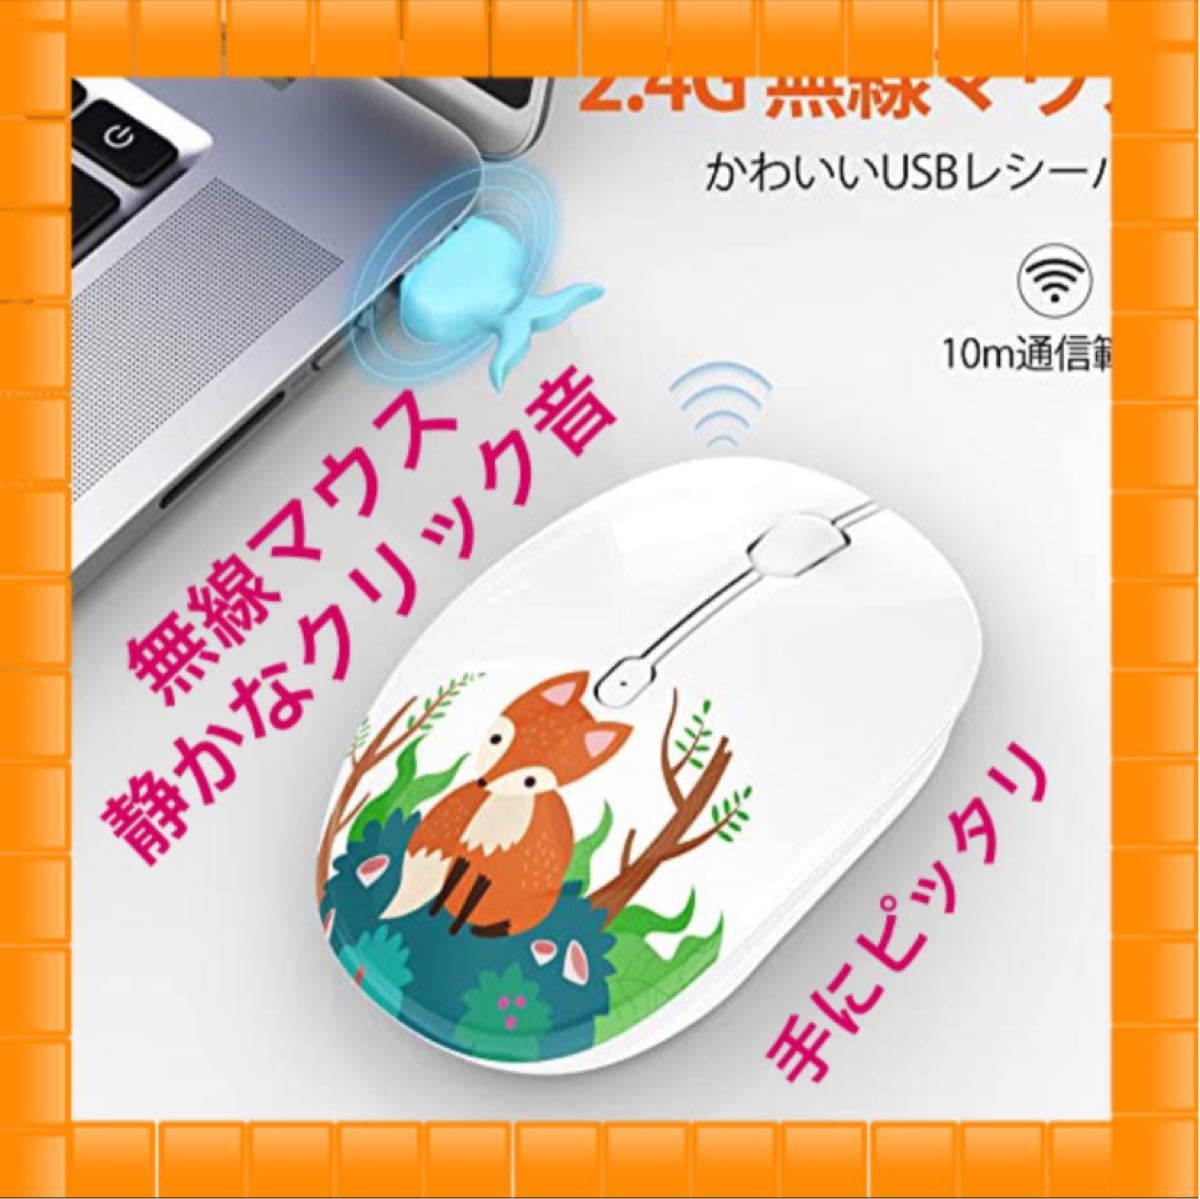 正規品 Bluetooth マウス かわいい ワイヤレス 電池式 静音マウス 無線 小型 10個まとめ売り スマホ タブレット パソコン パソコン周辺機器 Ekumudini Com